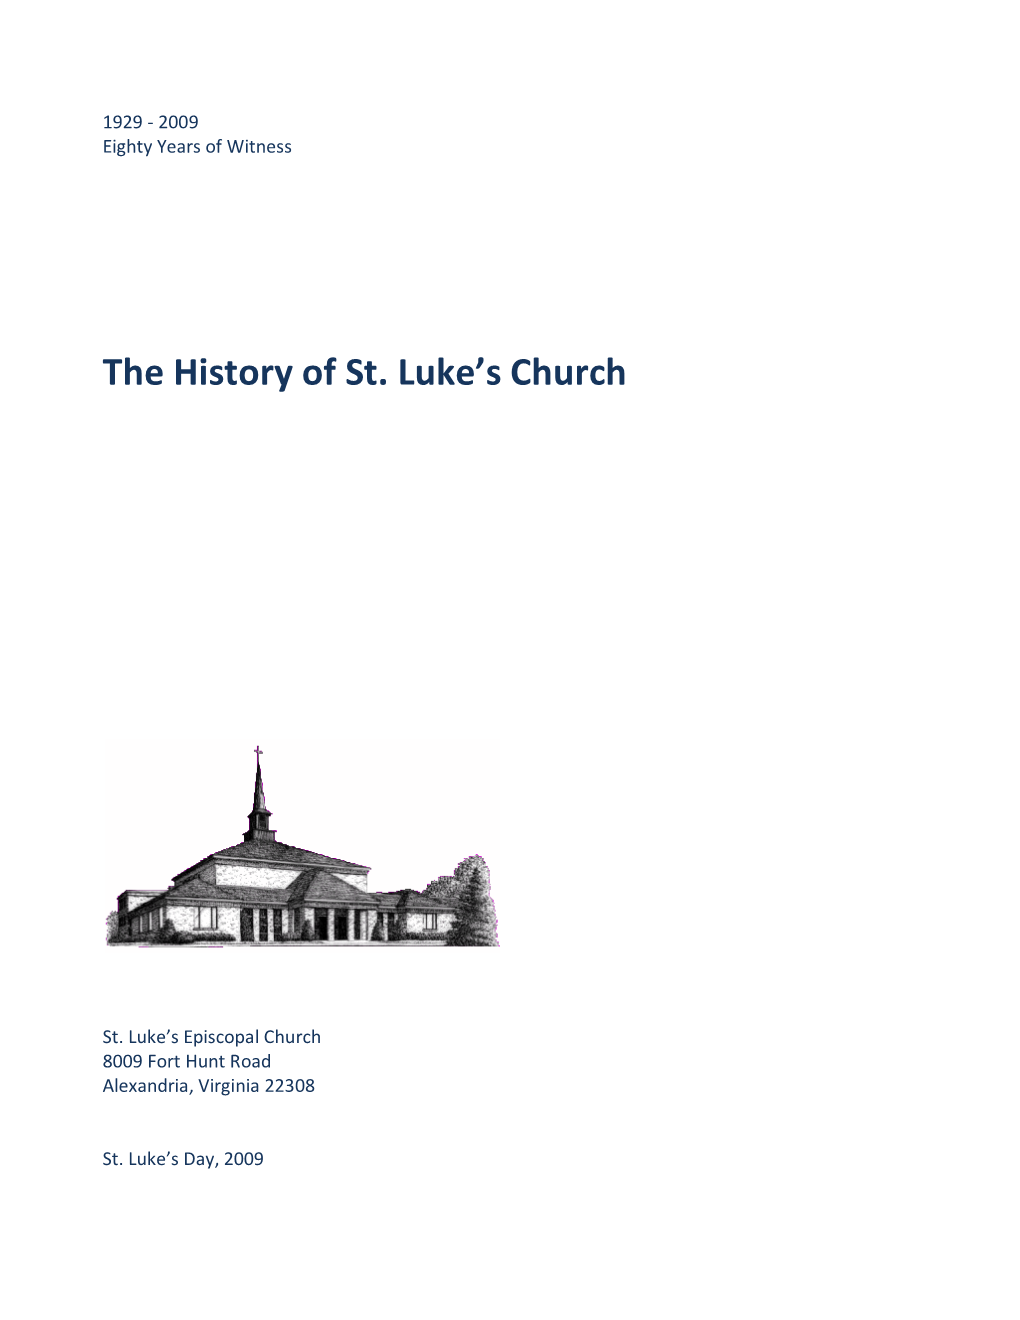 History of St Lukes